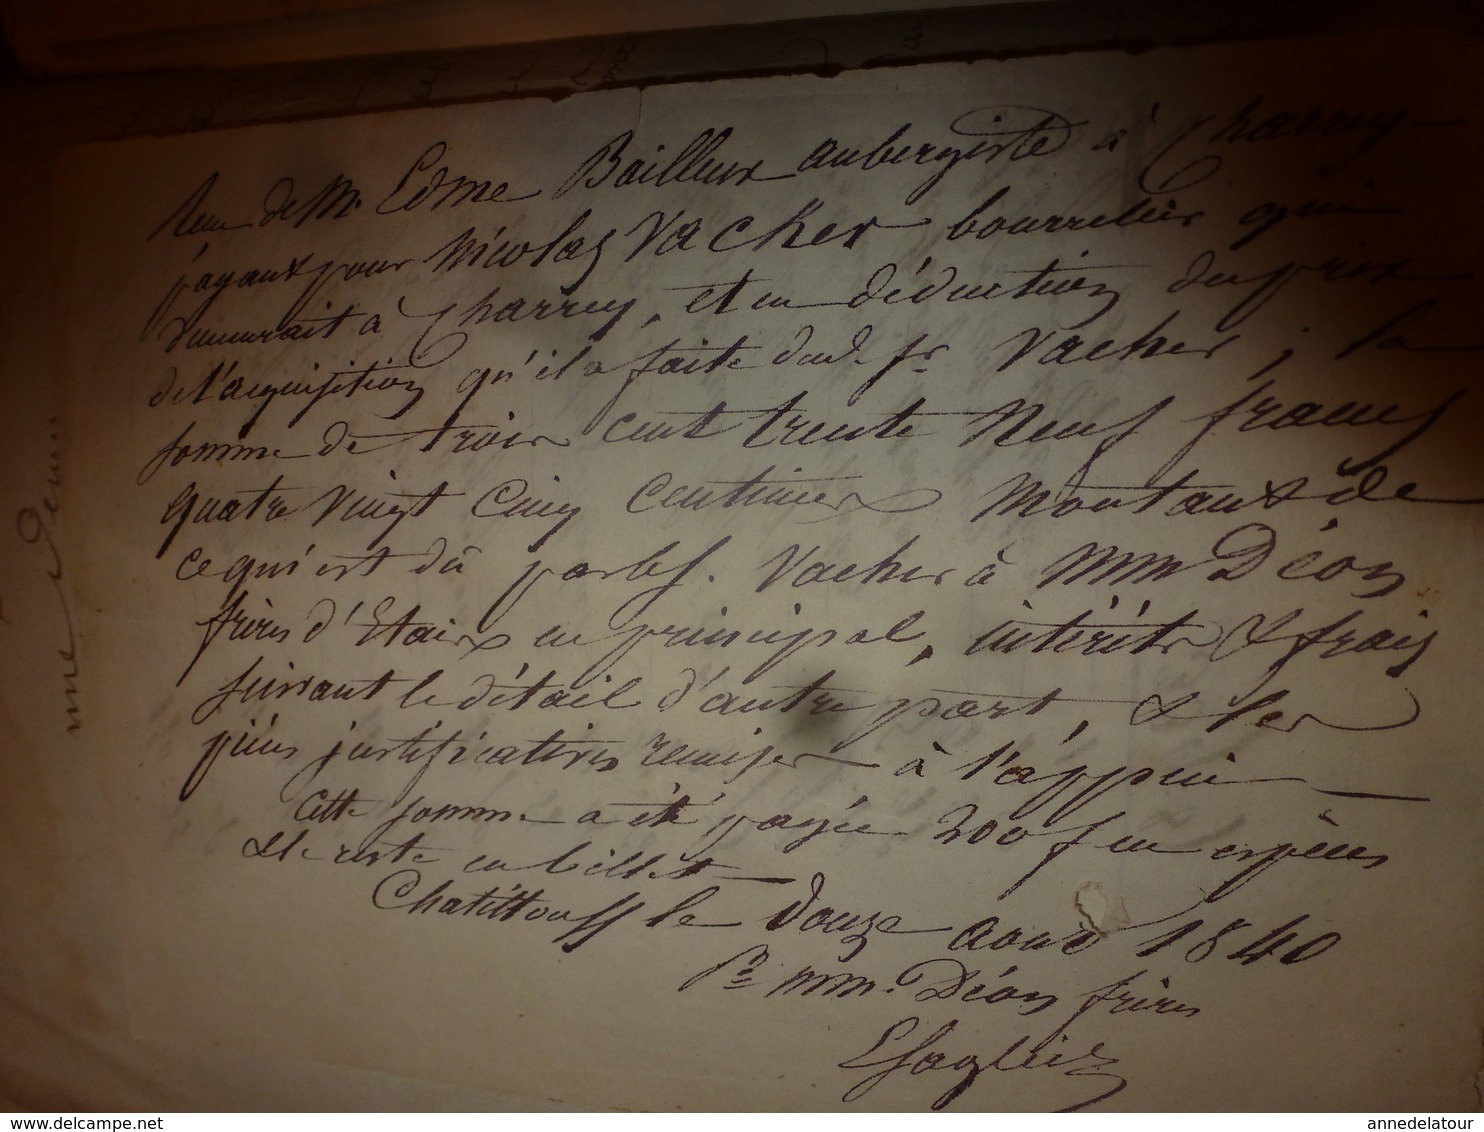 1840 Liasse de manuscrits -> Actes concernant Nicolas Vacher bourrelier à Charrey (21) et Bailleux Aubergiste à Charrey